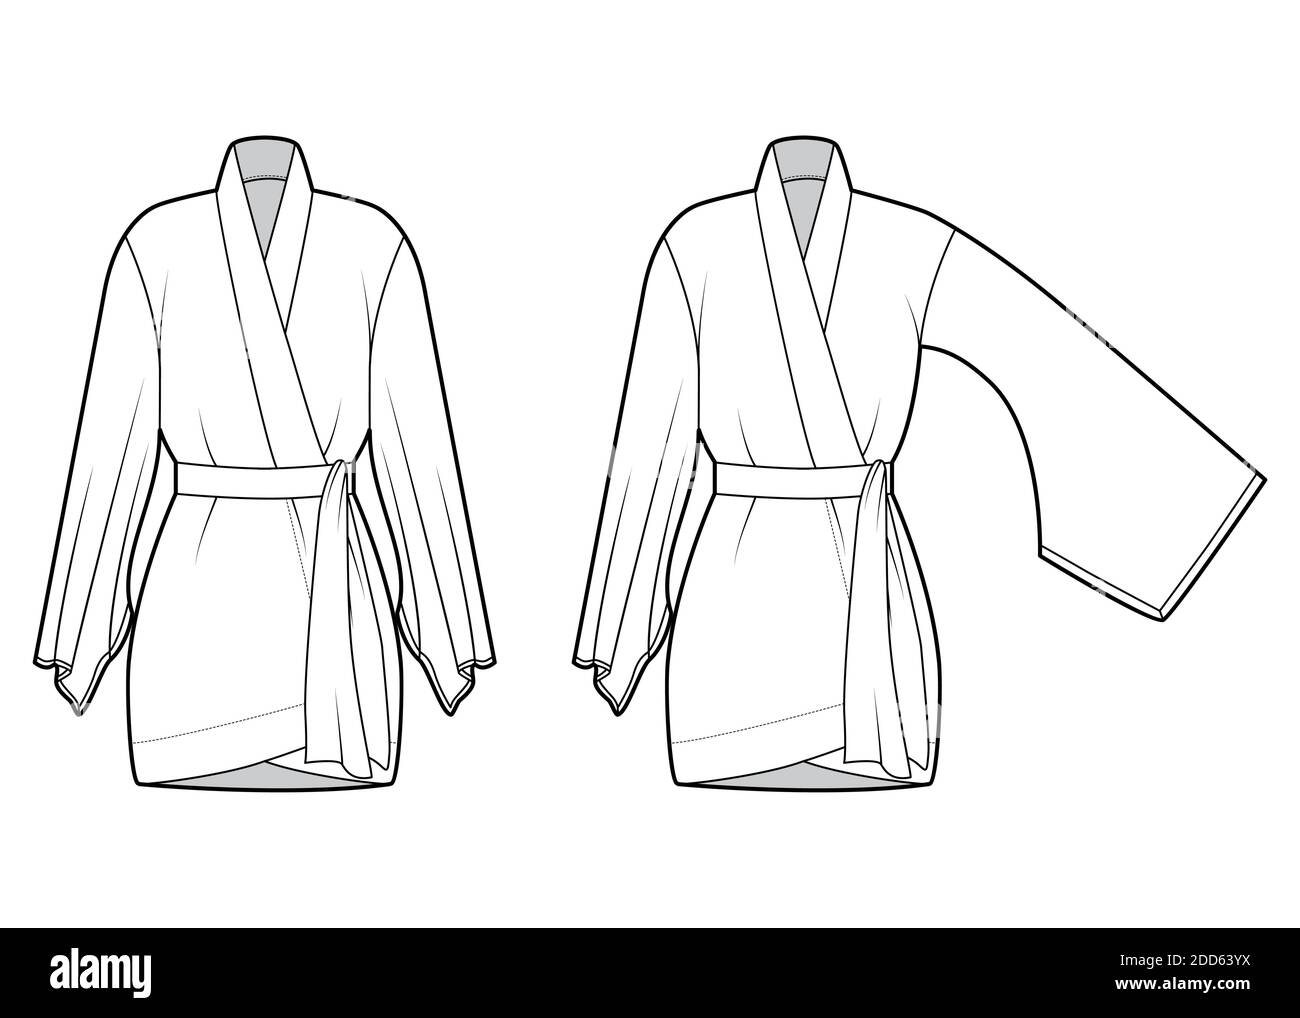 Juego de Kimono traje técnico ilustración de moda con mangas largas y  anchas, cinturón para cinch la cintura, por encima de la rodilla. Plantilla  de blusa plana frontal, color blanco. Mujer hombres